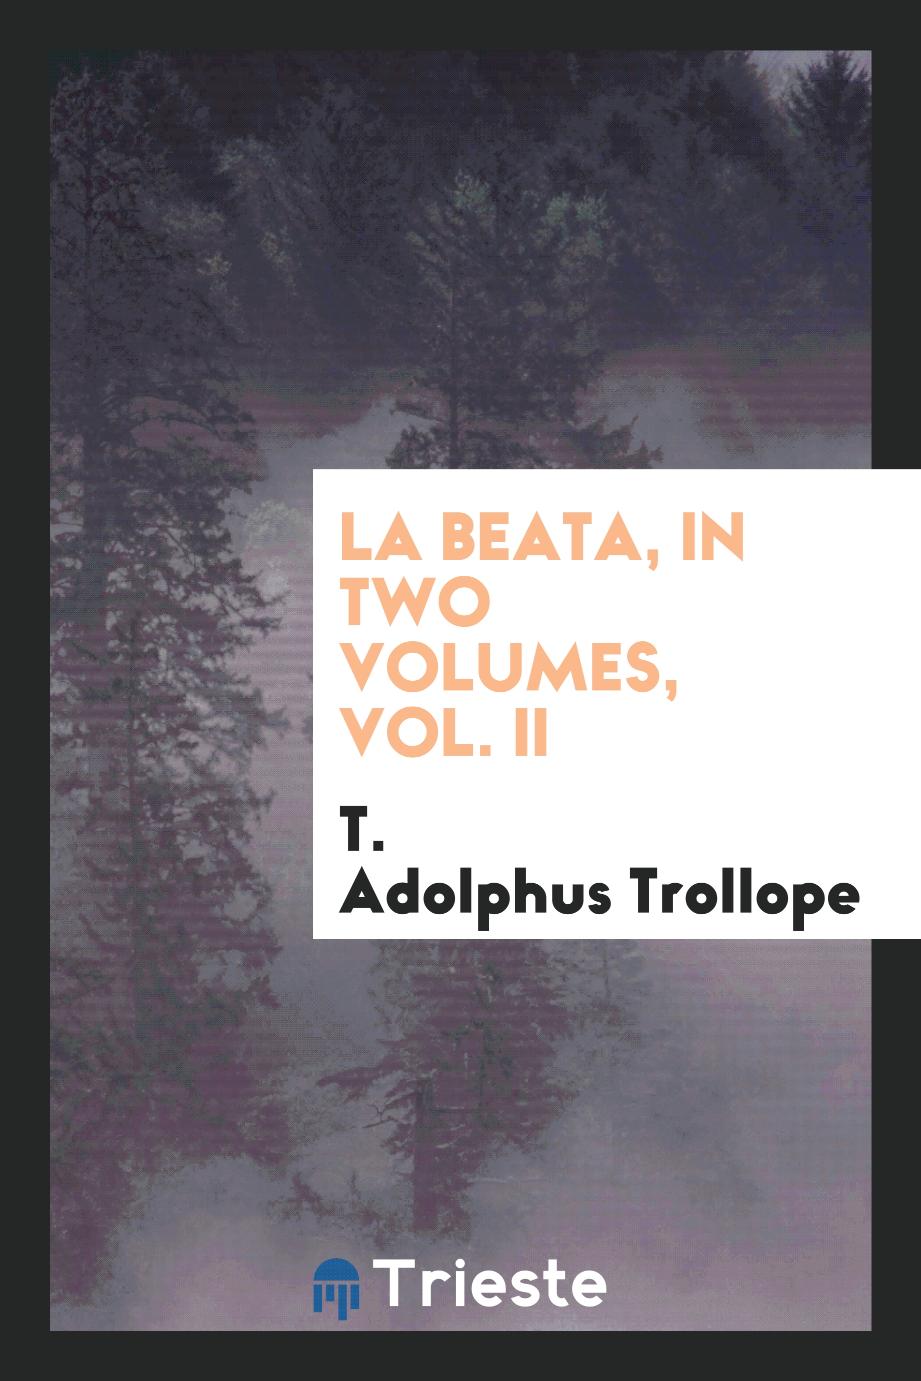 La Beata, in two volumes, Vol. II